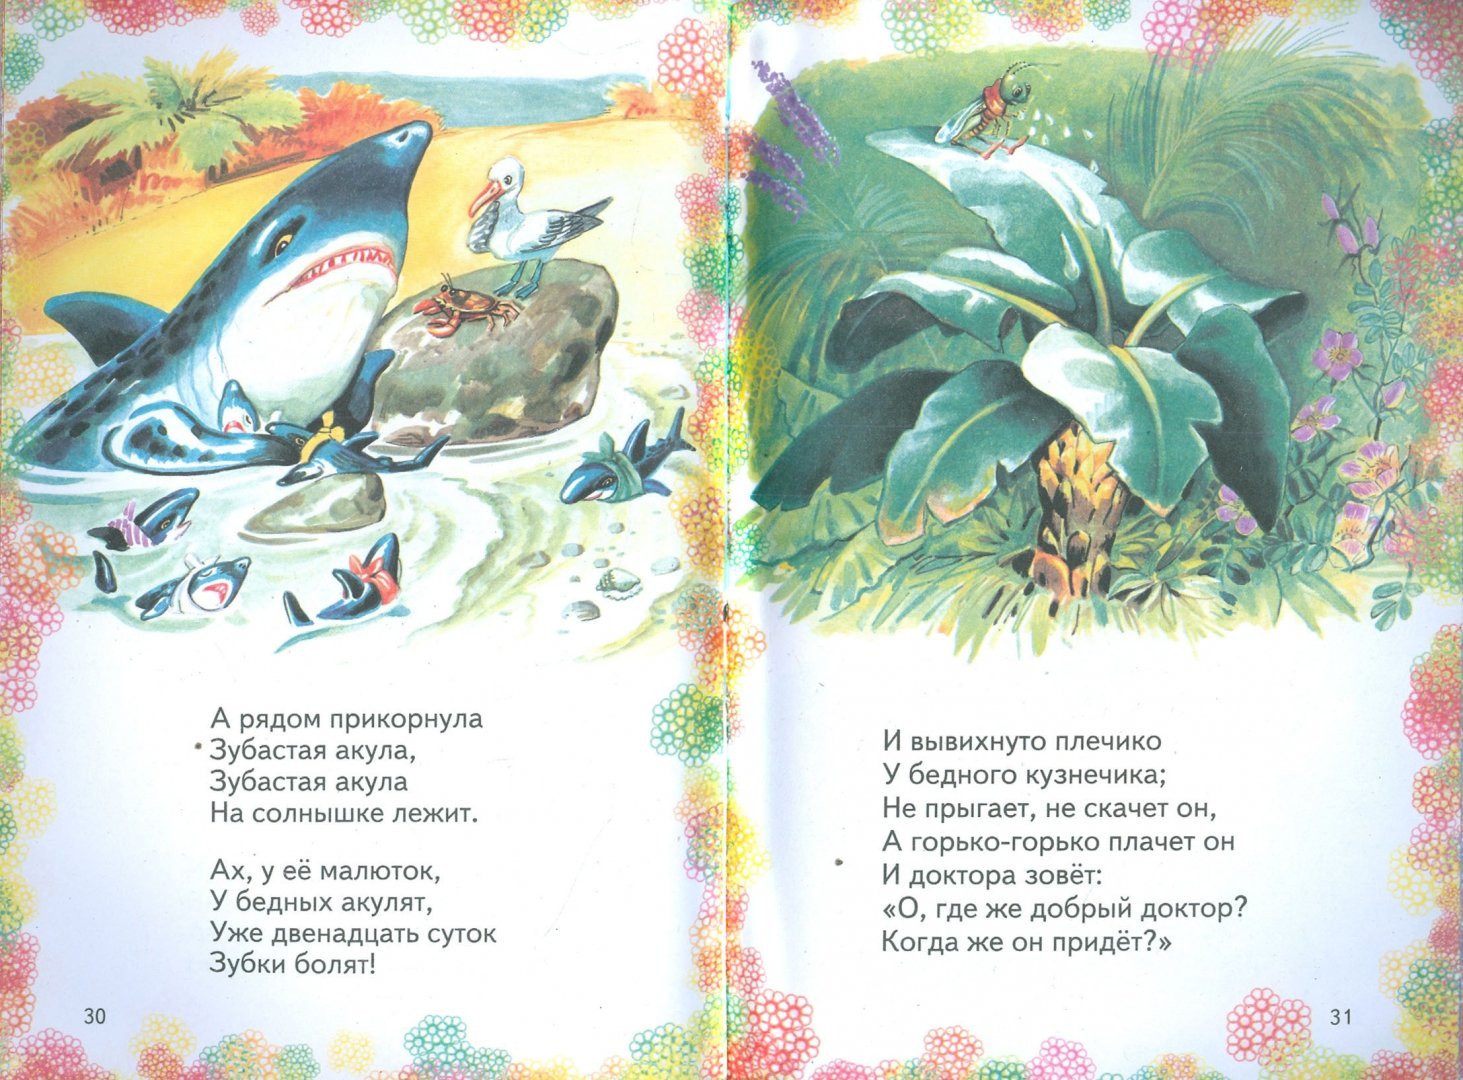 Иллюстрация 1 из 2 для Айболит - Корней Чуковский | Лабиринт - книги. Источник: Лабиринт